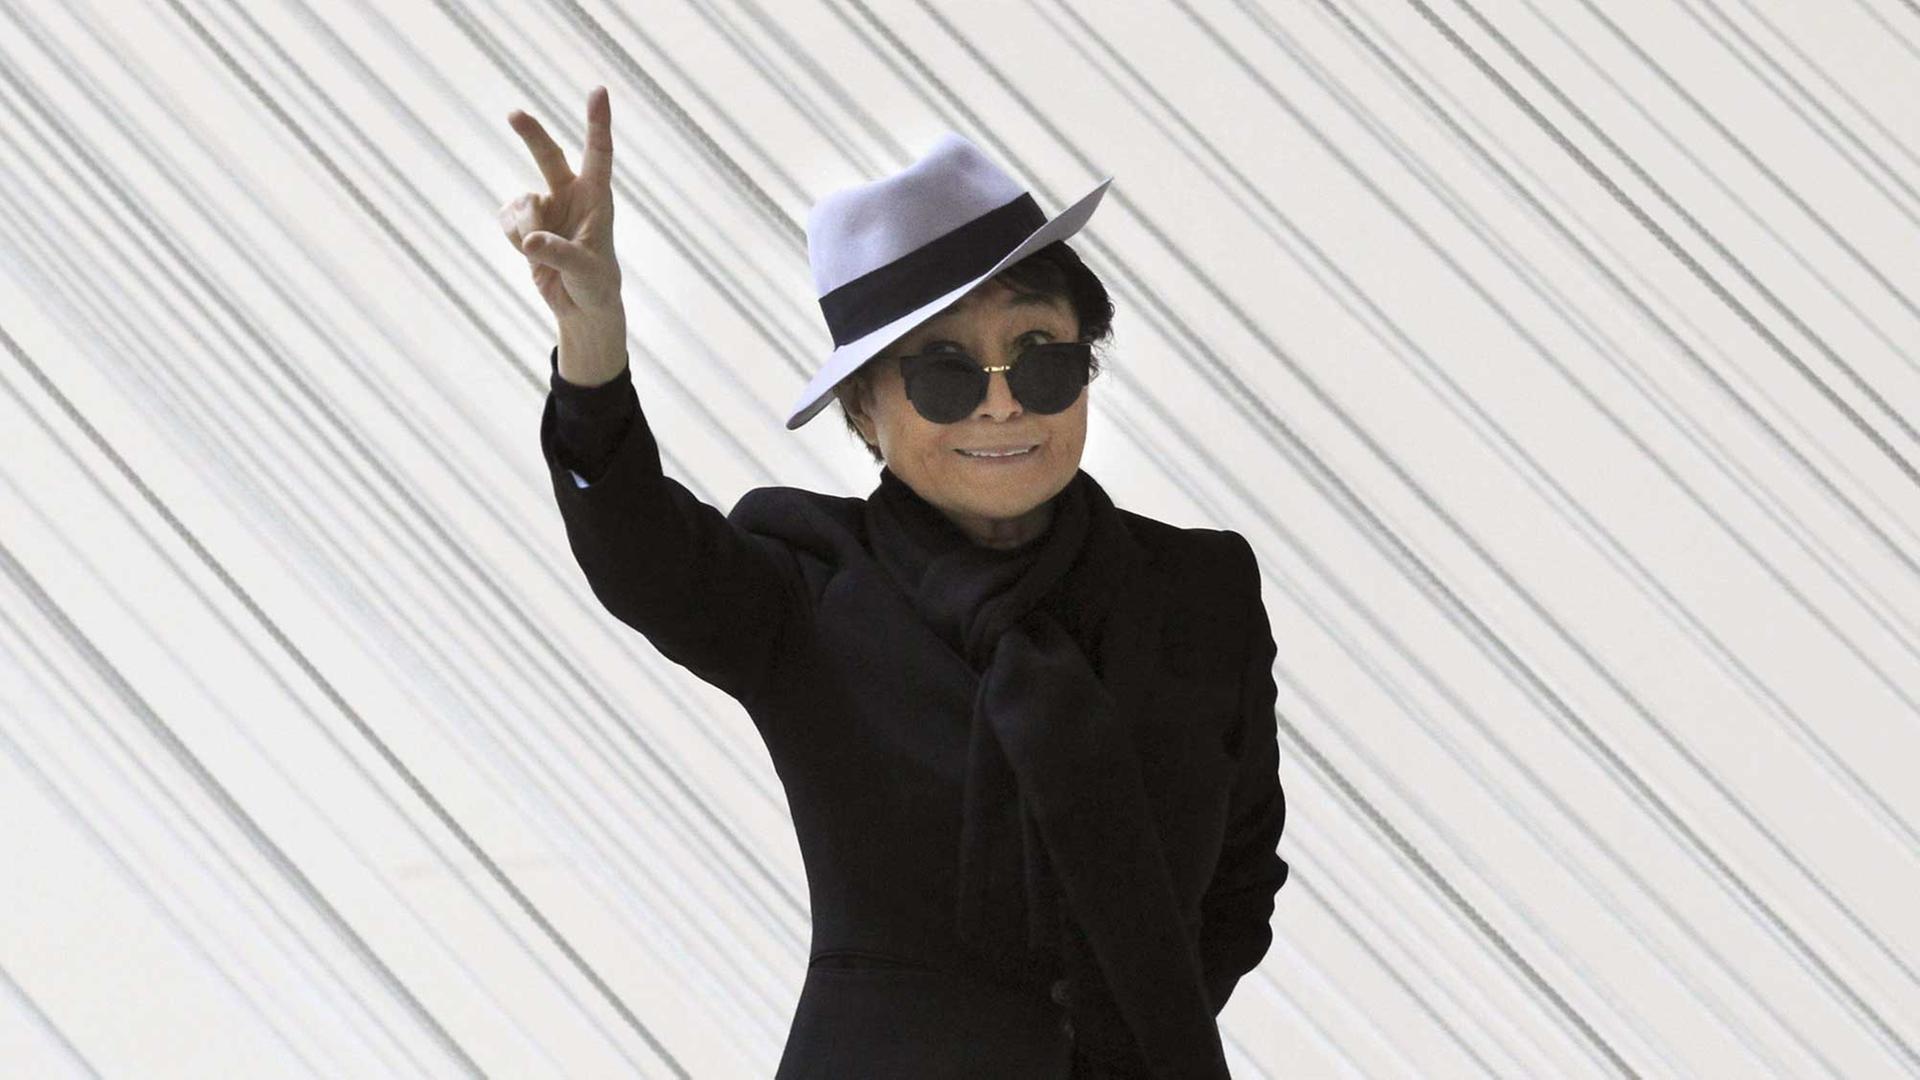 Die Künstlerin Yoko Ono bei ihrer Retrospektive "Half-A-Wind Show" im Guggenheim Museum in Bilbao, Spanien